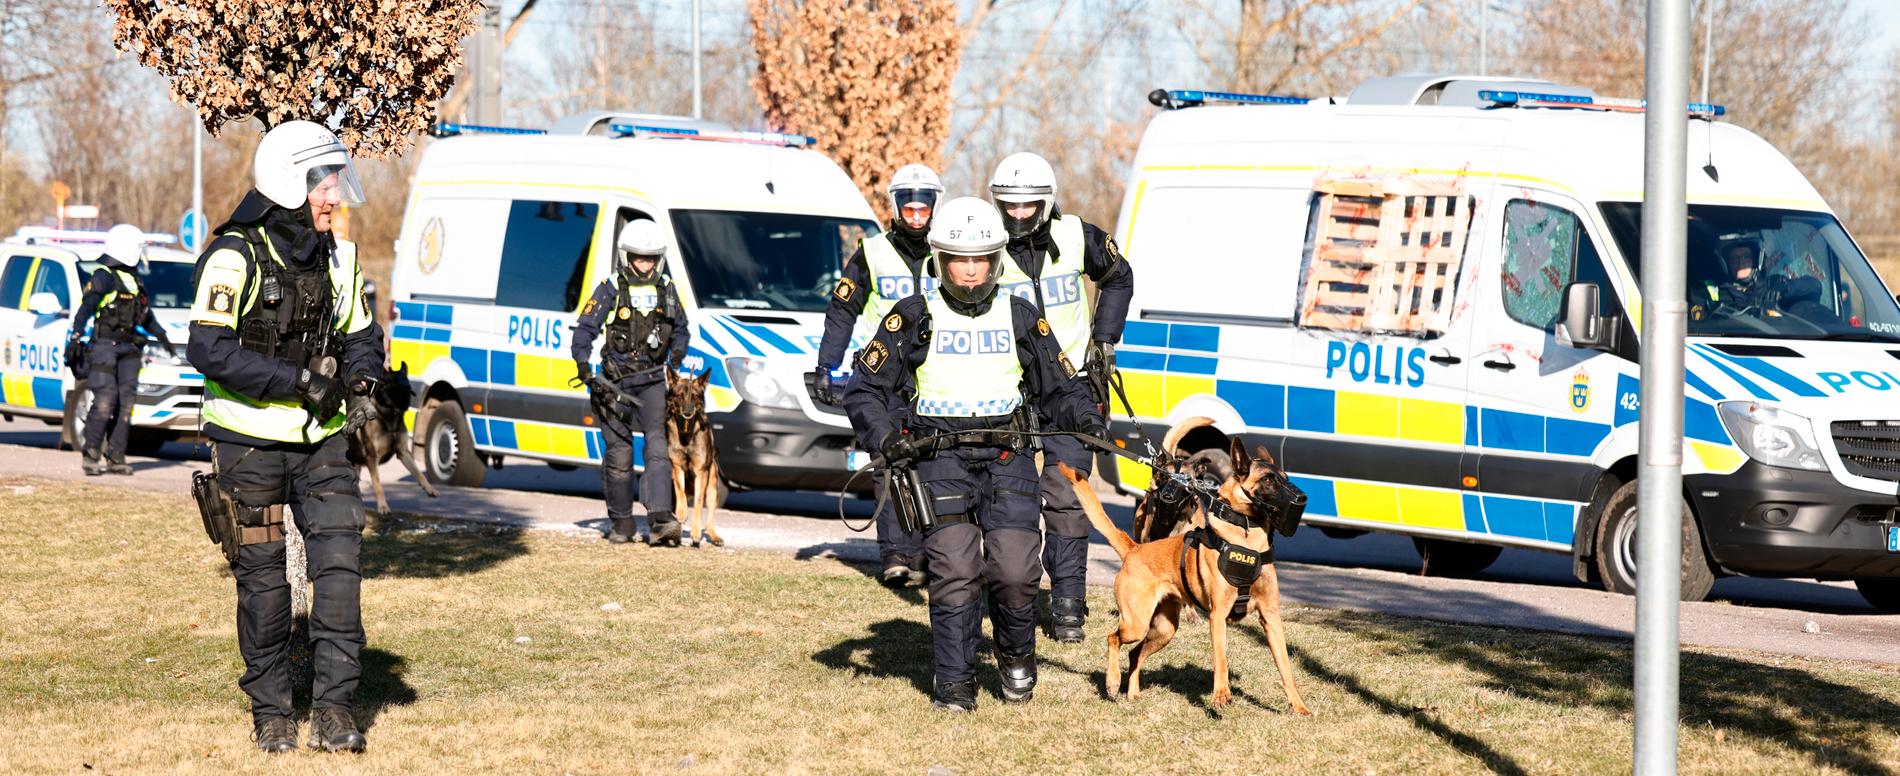 Kravallutrustad polis med polishundar under upploppen i Navestad i Norrköping